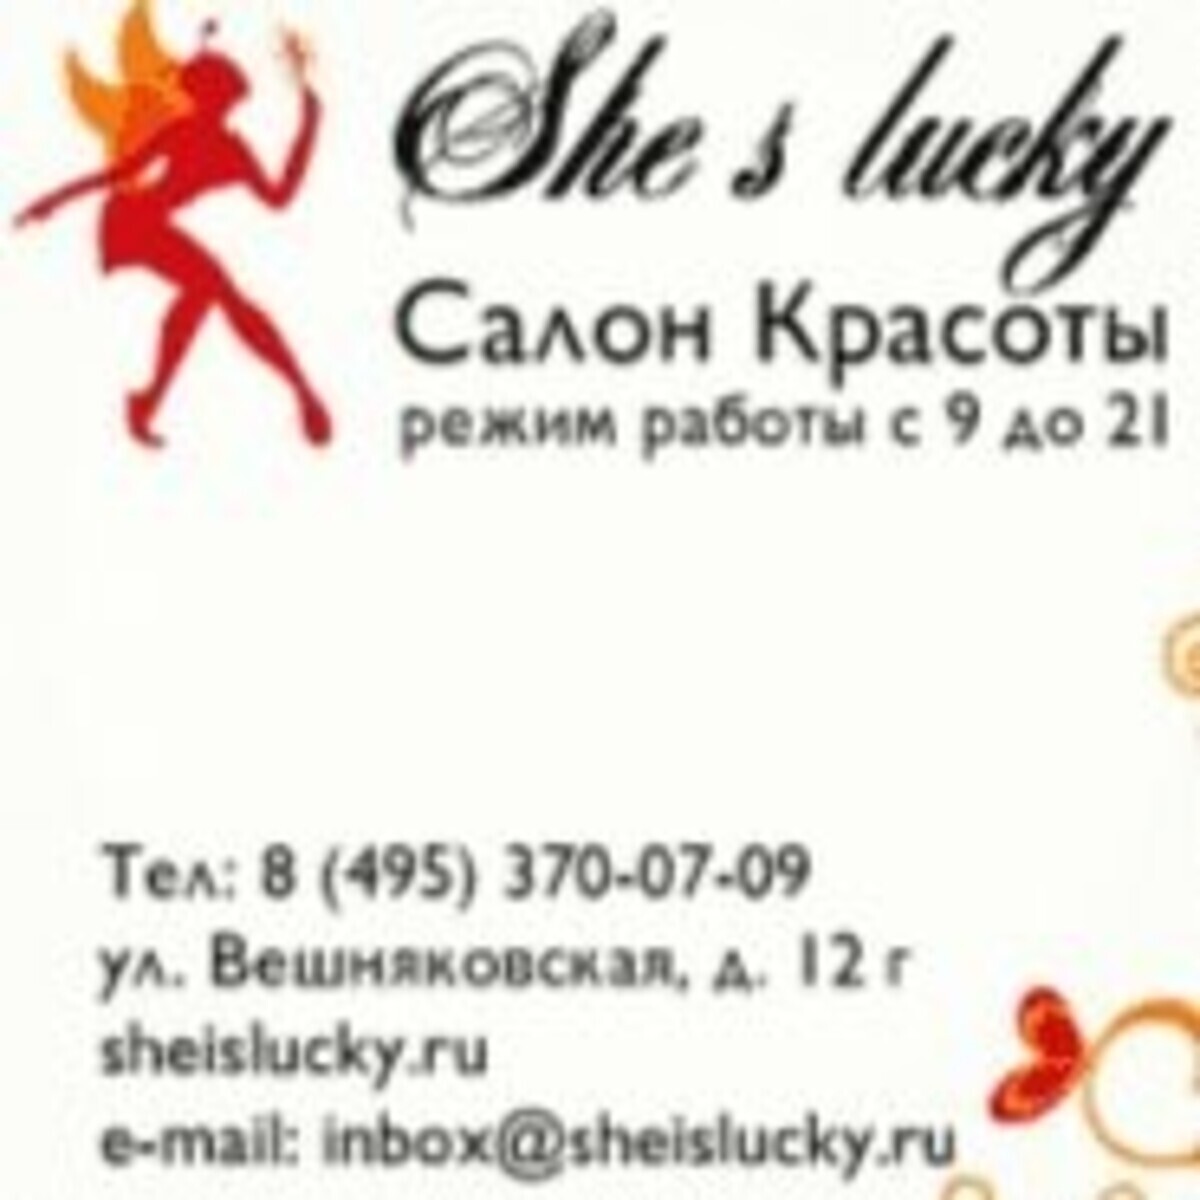 Салон красоты Вешняковская 12 г